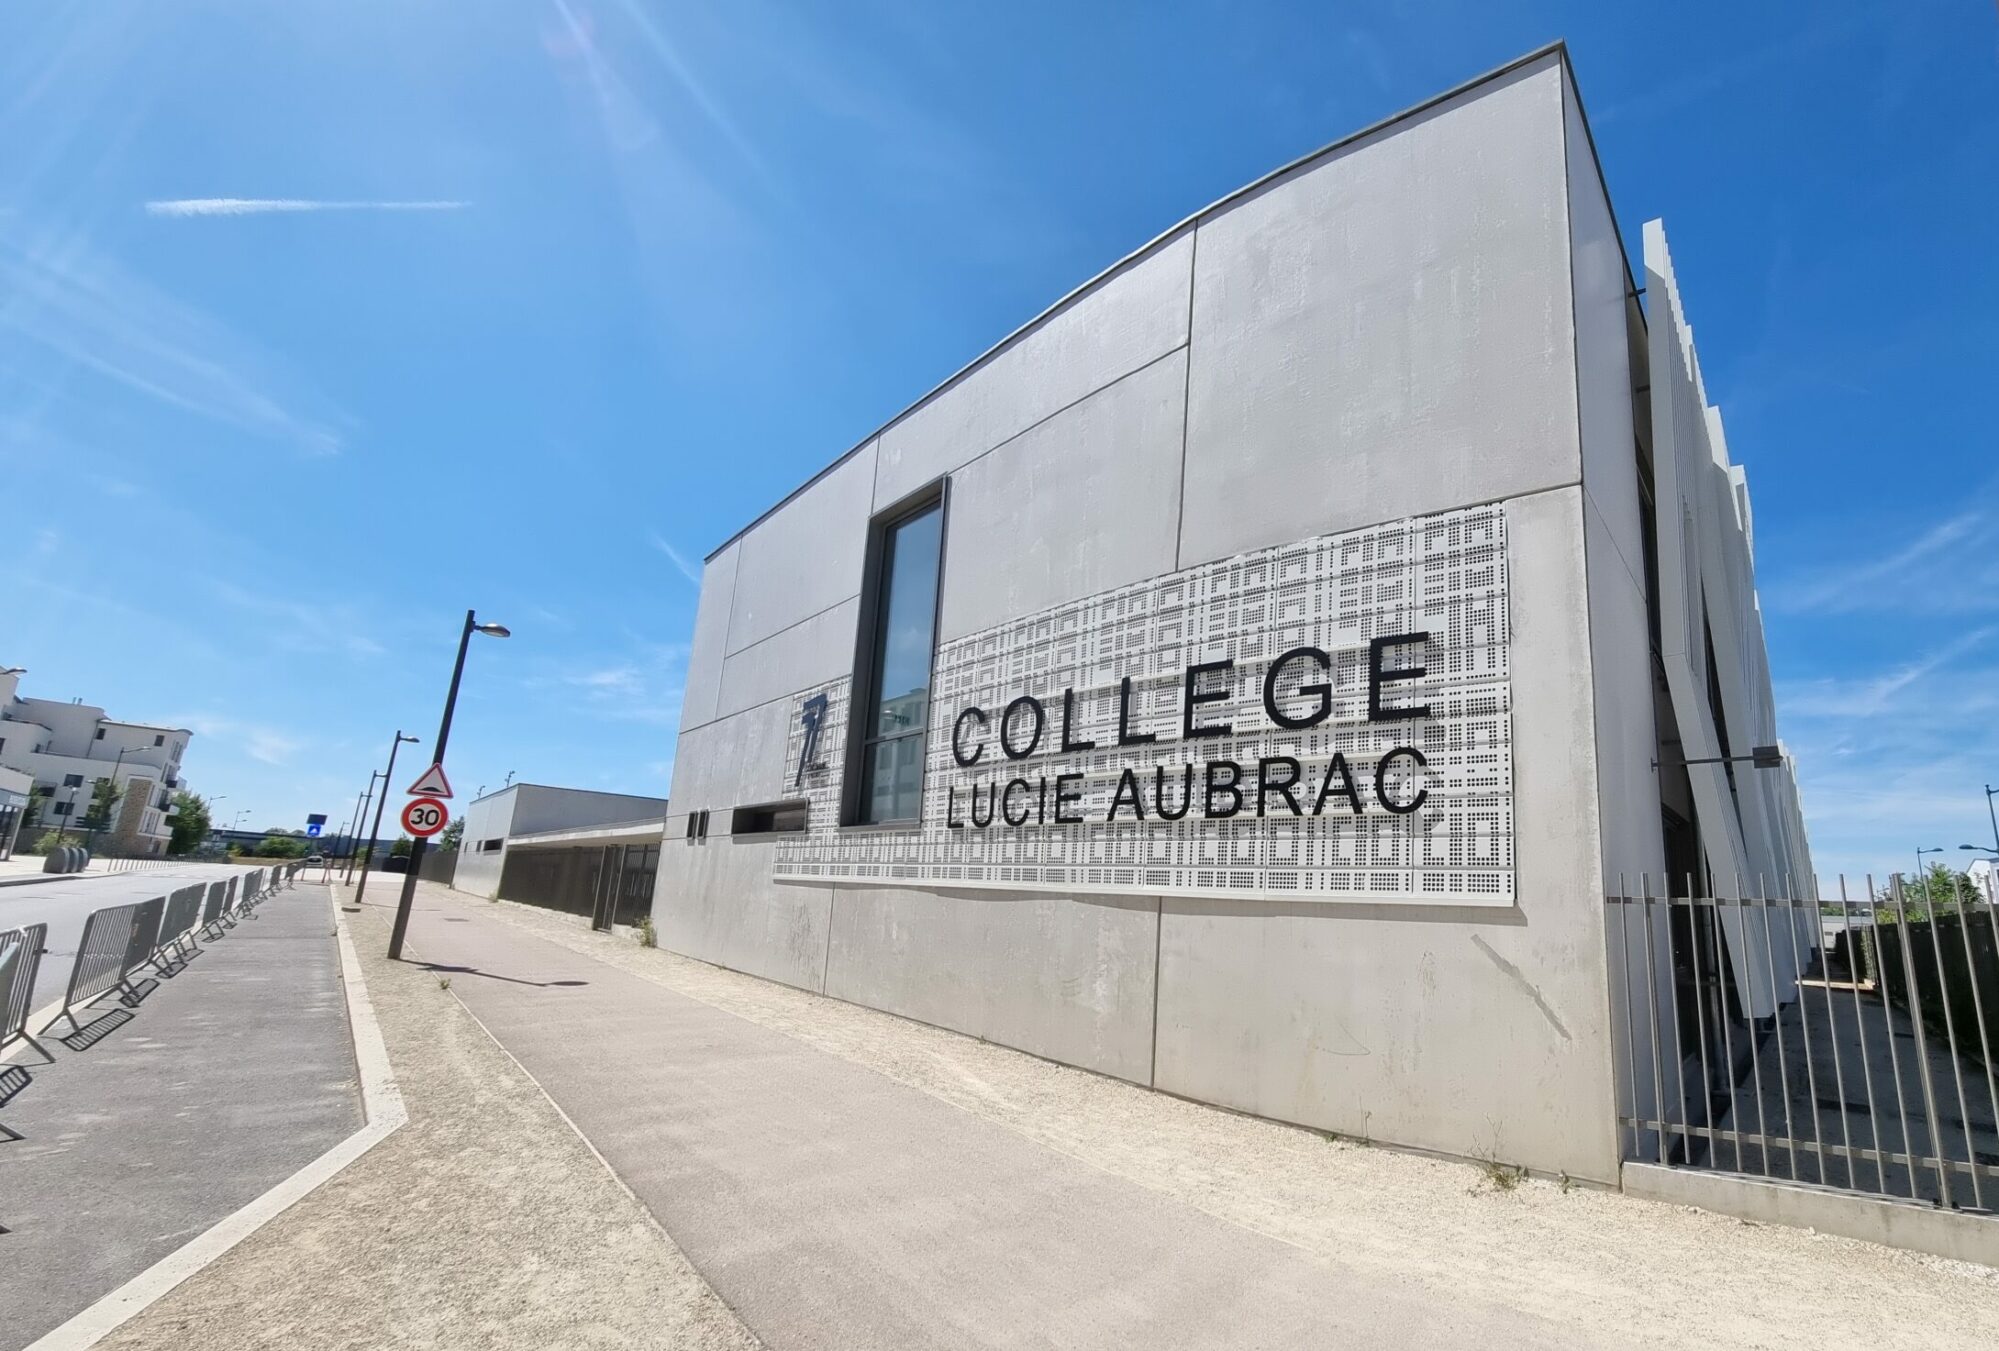 Collège Lucie Aubrac